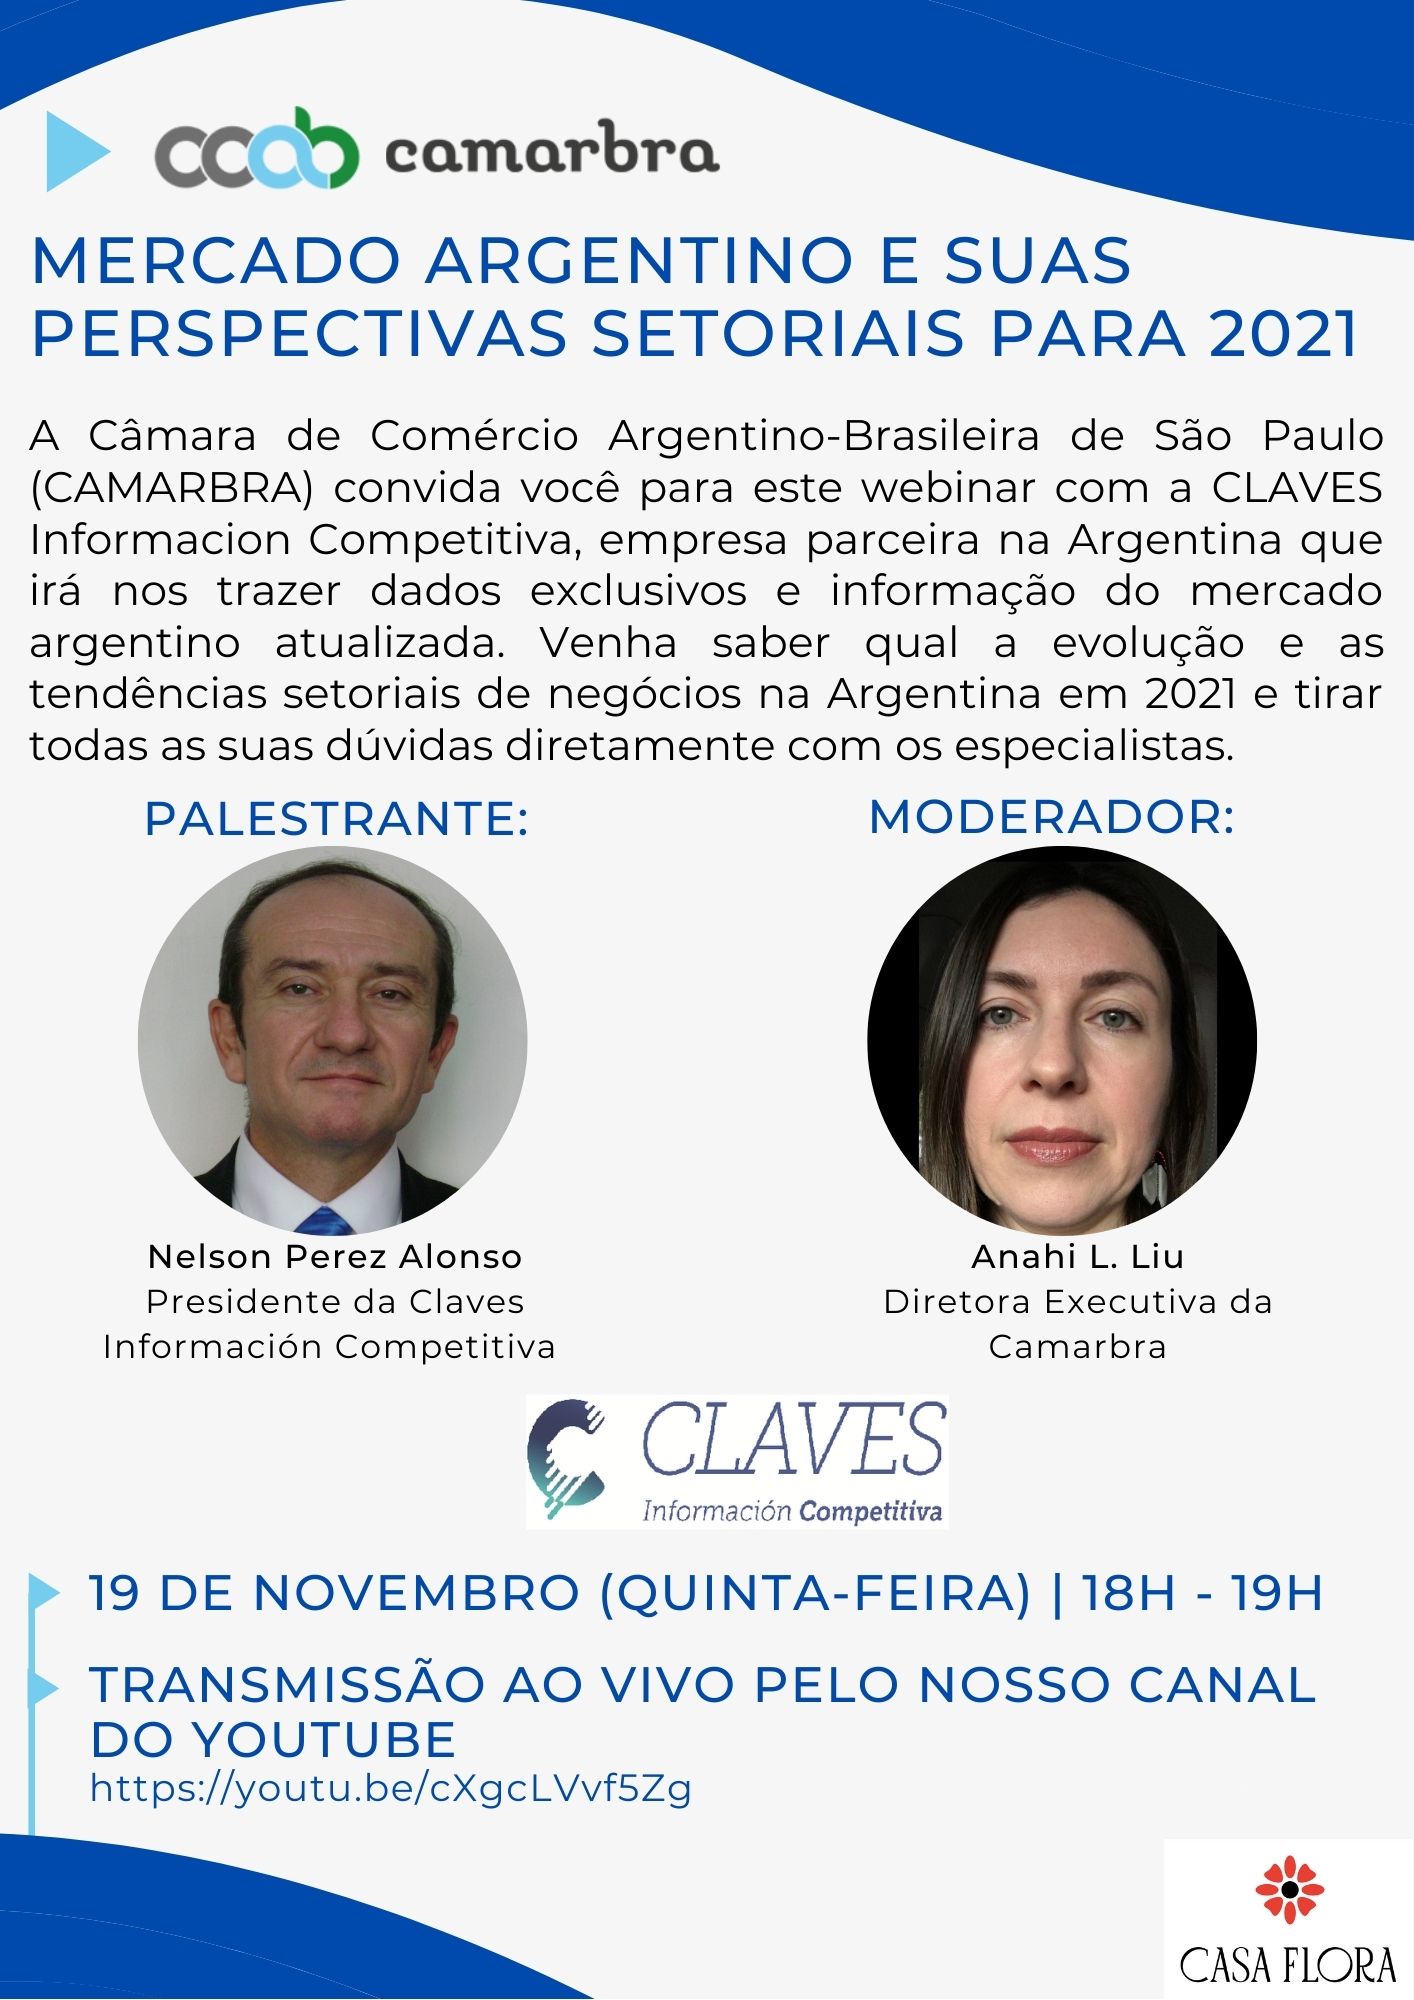 Mercado argentino e suas perspectivas setoriais para 2021